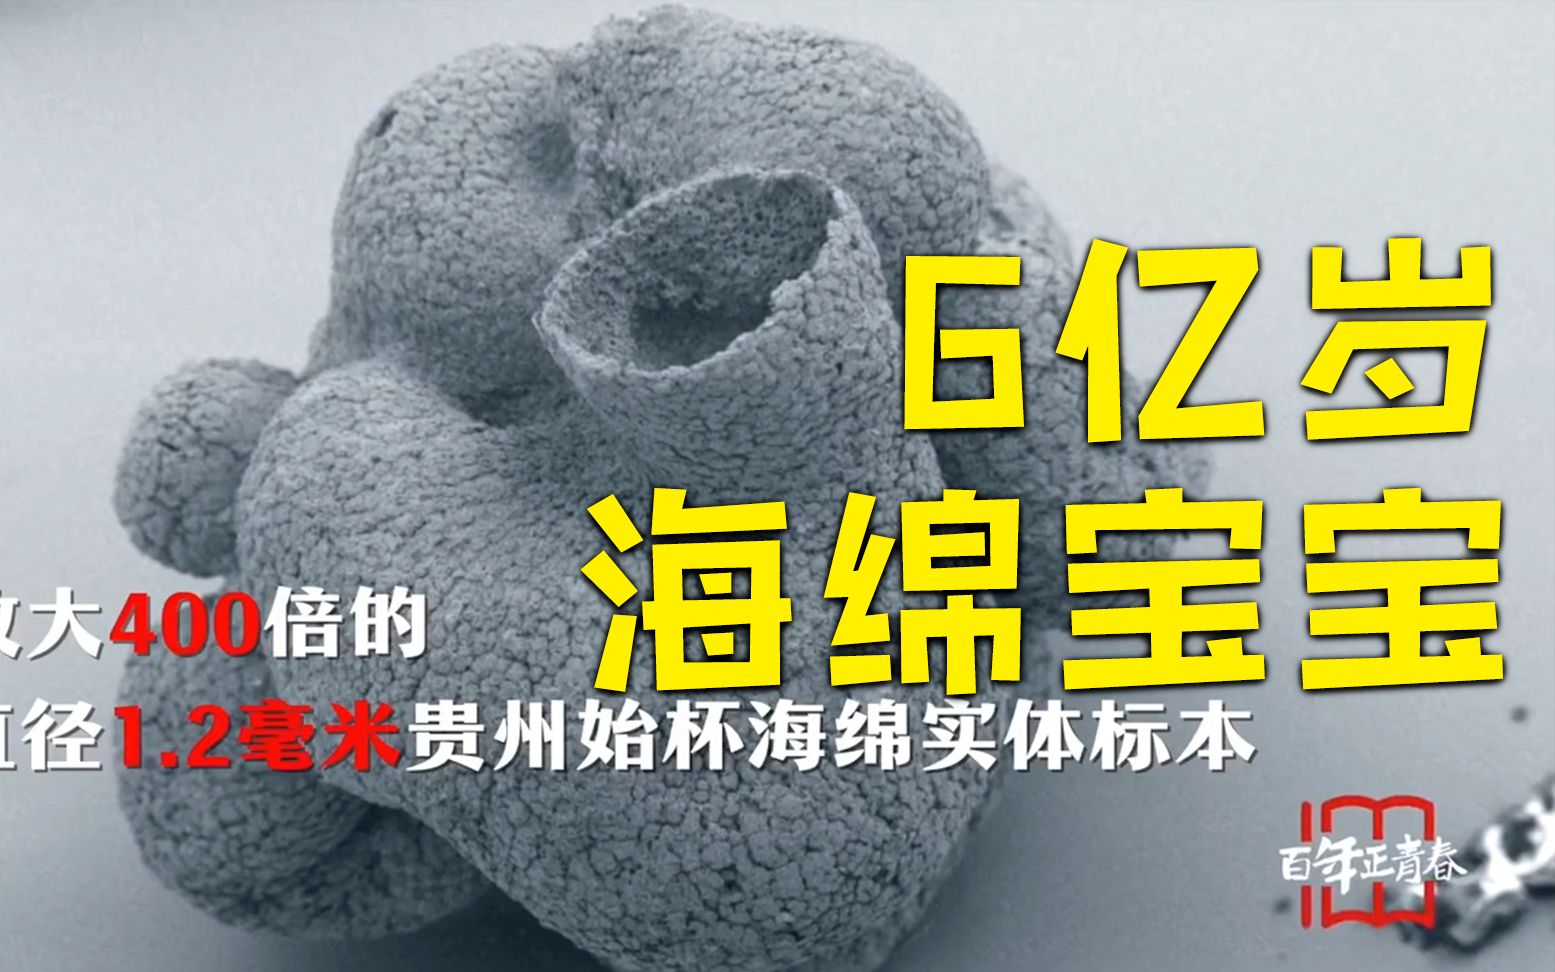 贵州发现6亿岁海绵宝宝